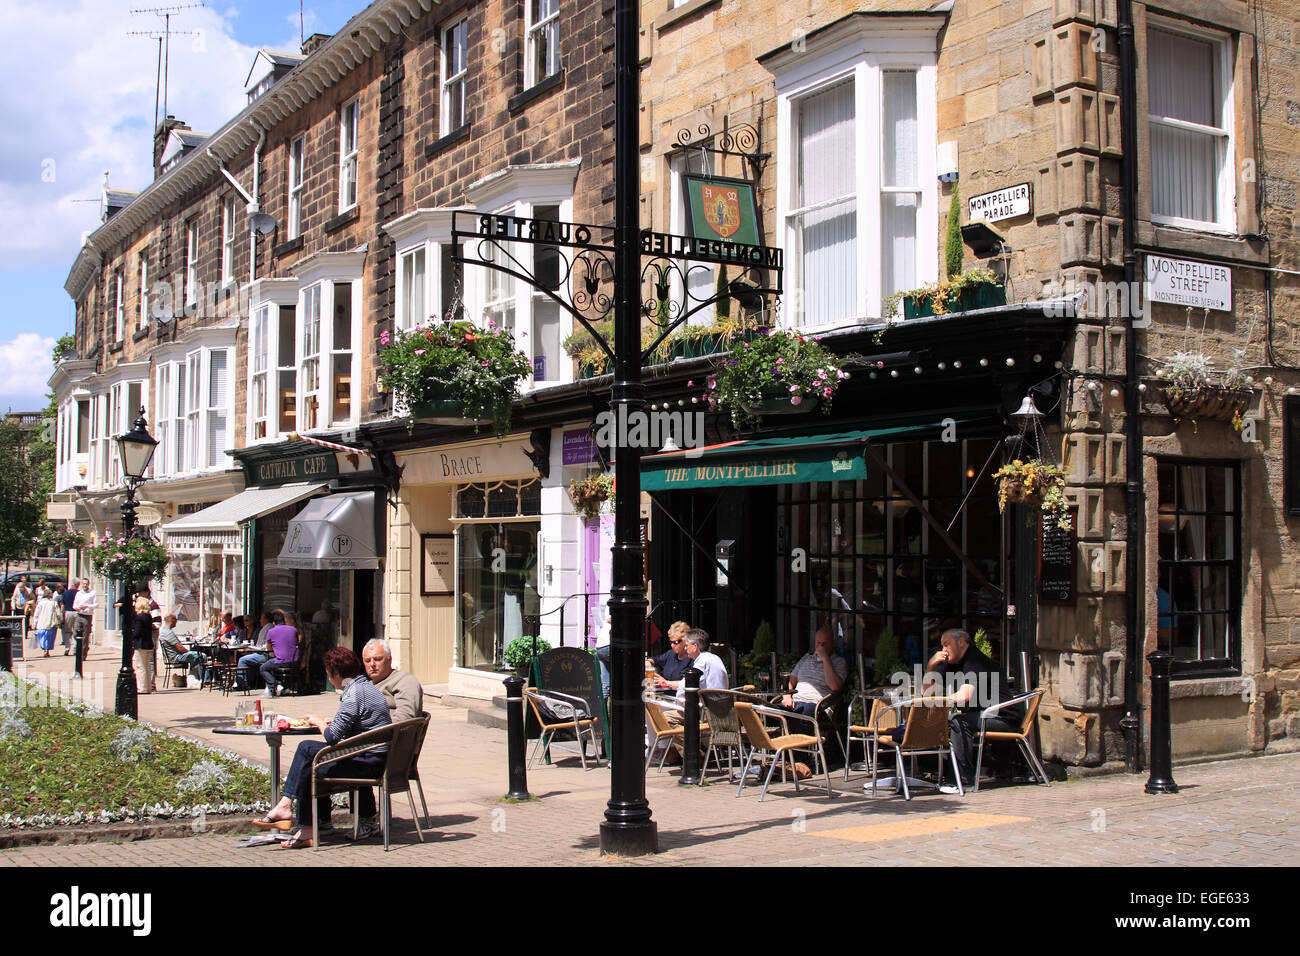 Le Montpellier bar et tables de la chaussée sur Montpelier / Parade / Harrogate North Yorkshire / UK Banque D'Images